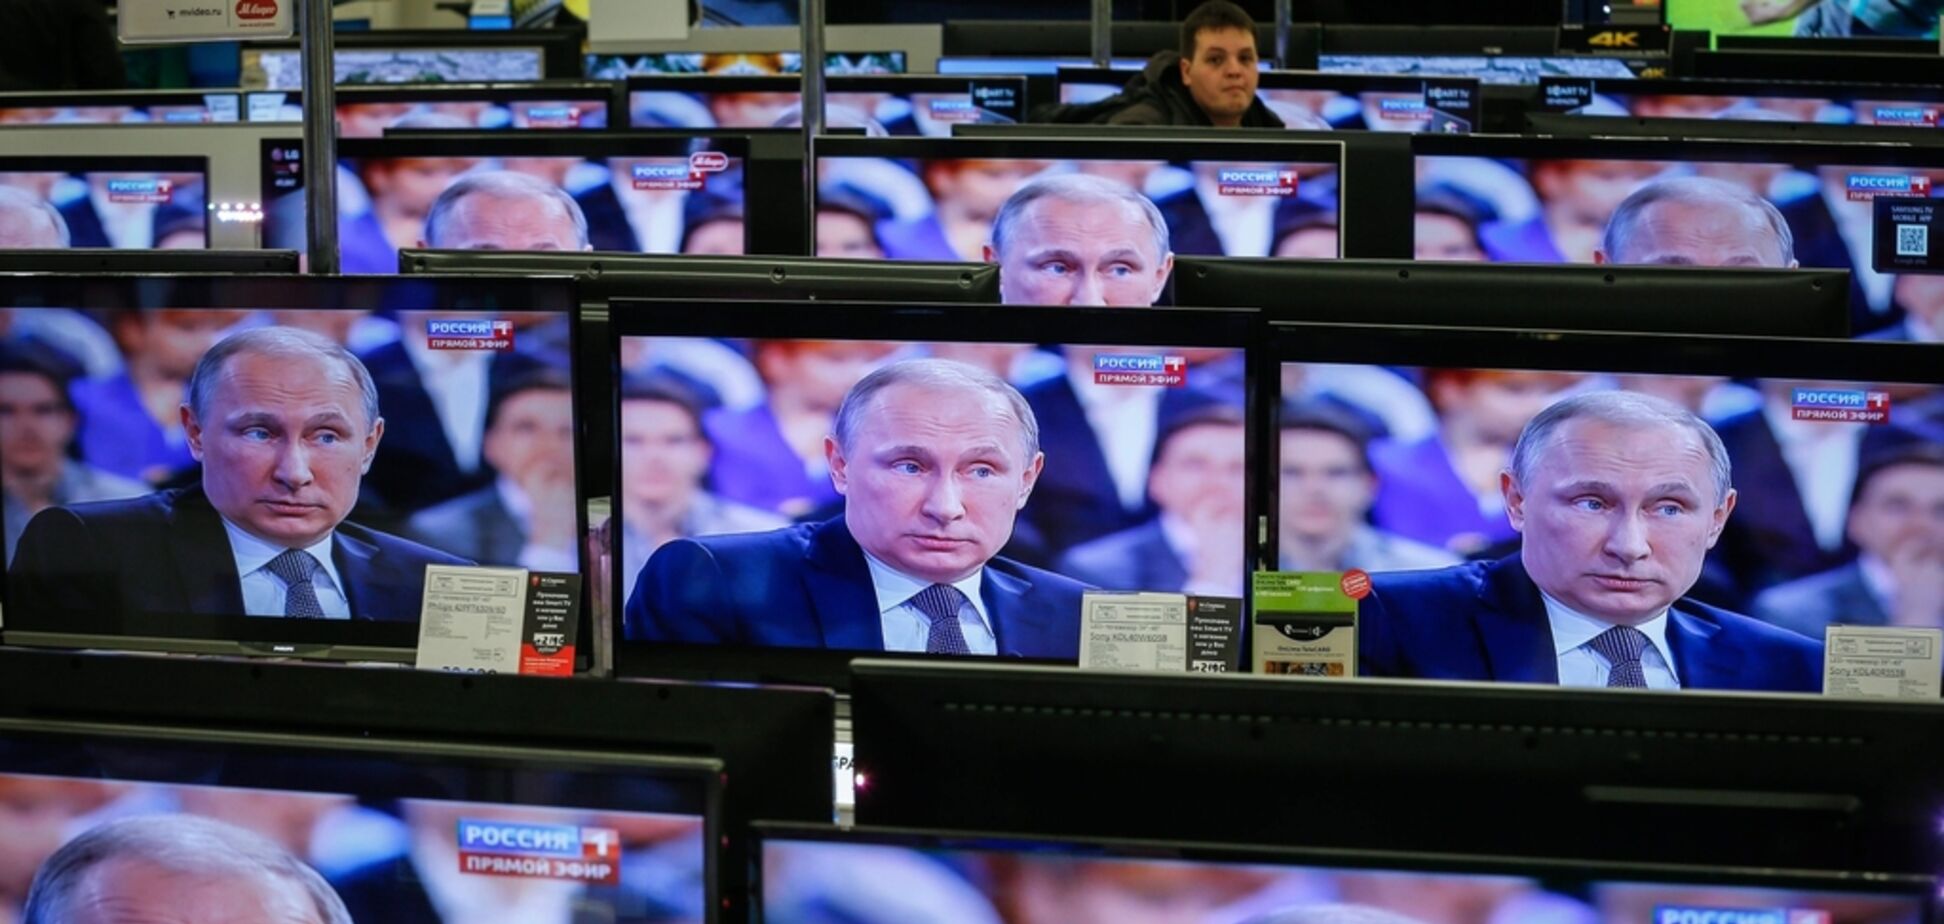 Поребрик News: Путина поймали на лжи о 'русской Украине'